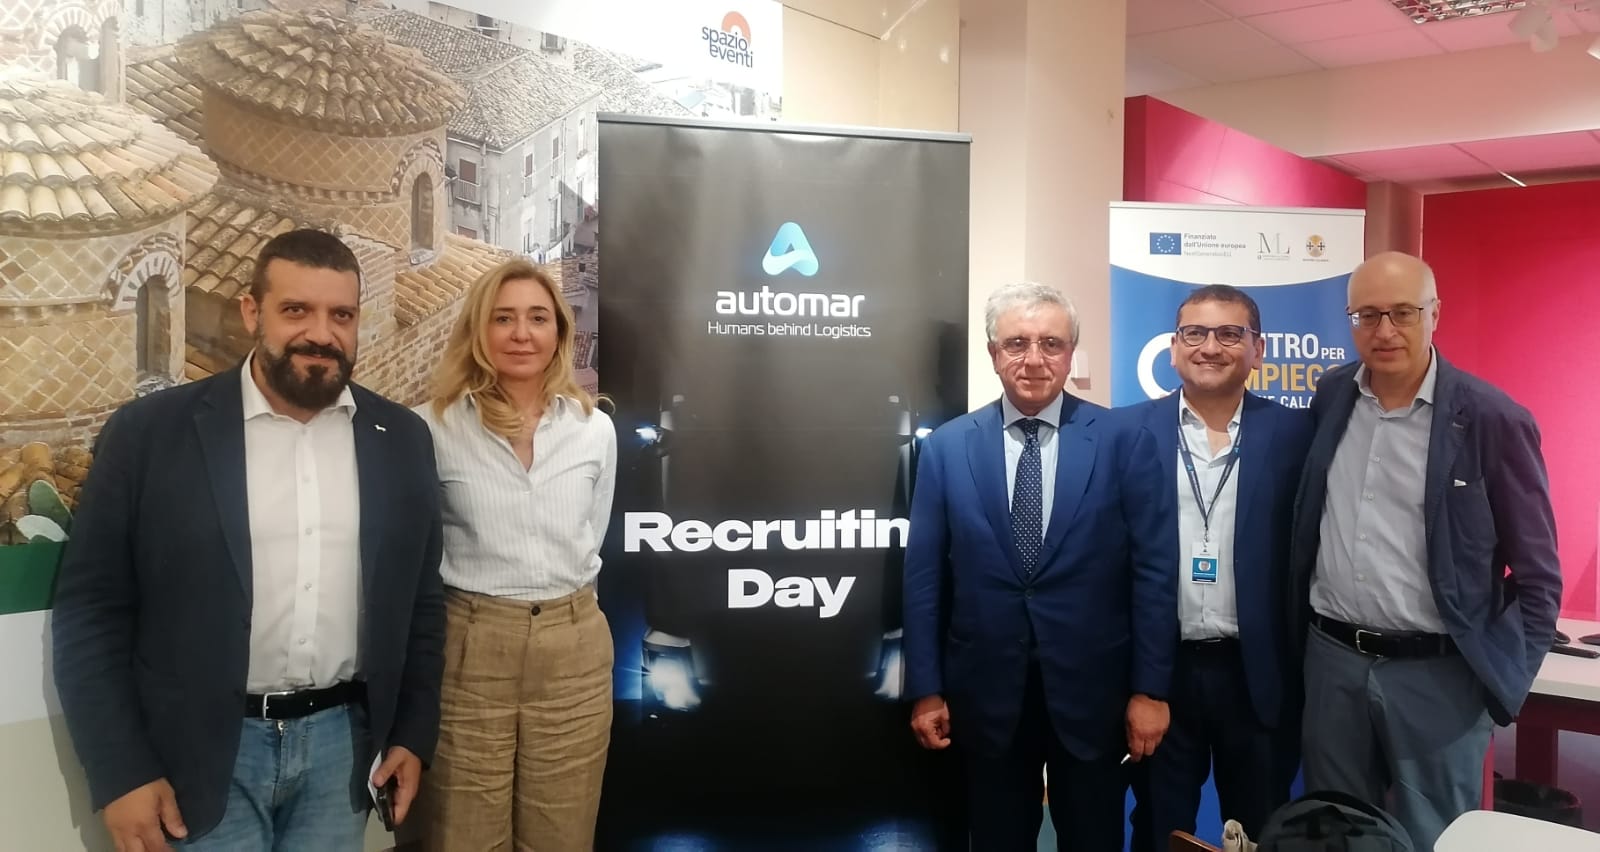 A lavoro con Automar, in Cittadella la prima fase dei colloqui di selezione: oltre 100 i candidati